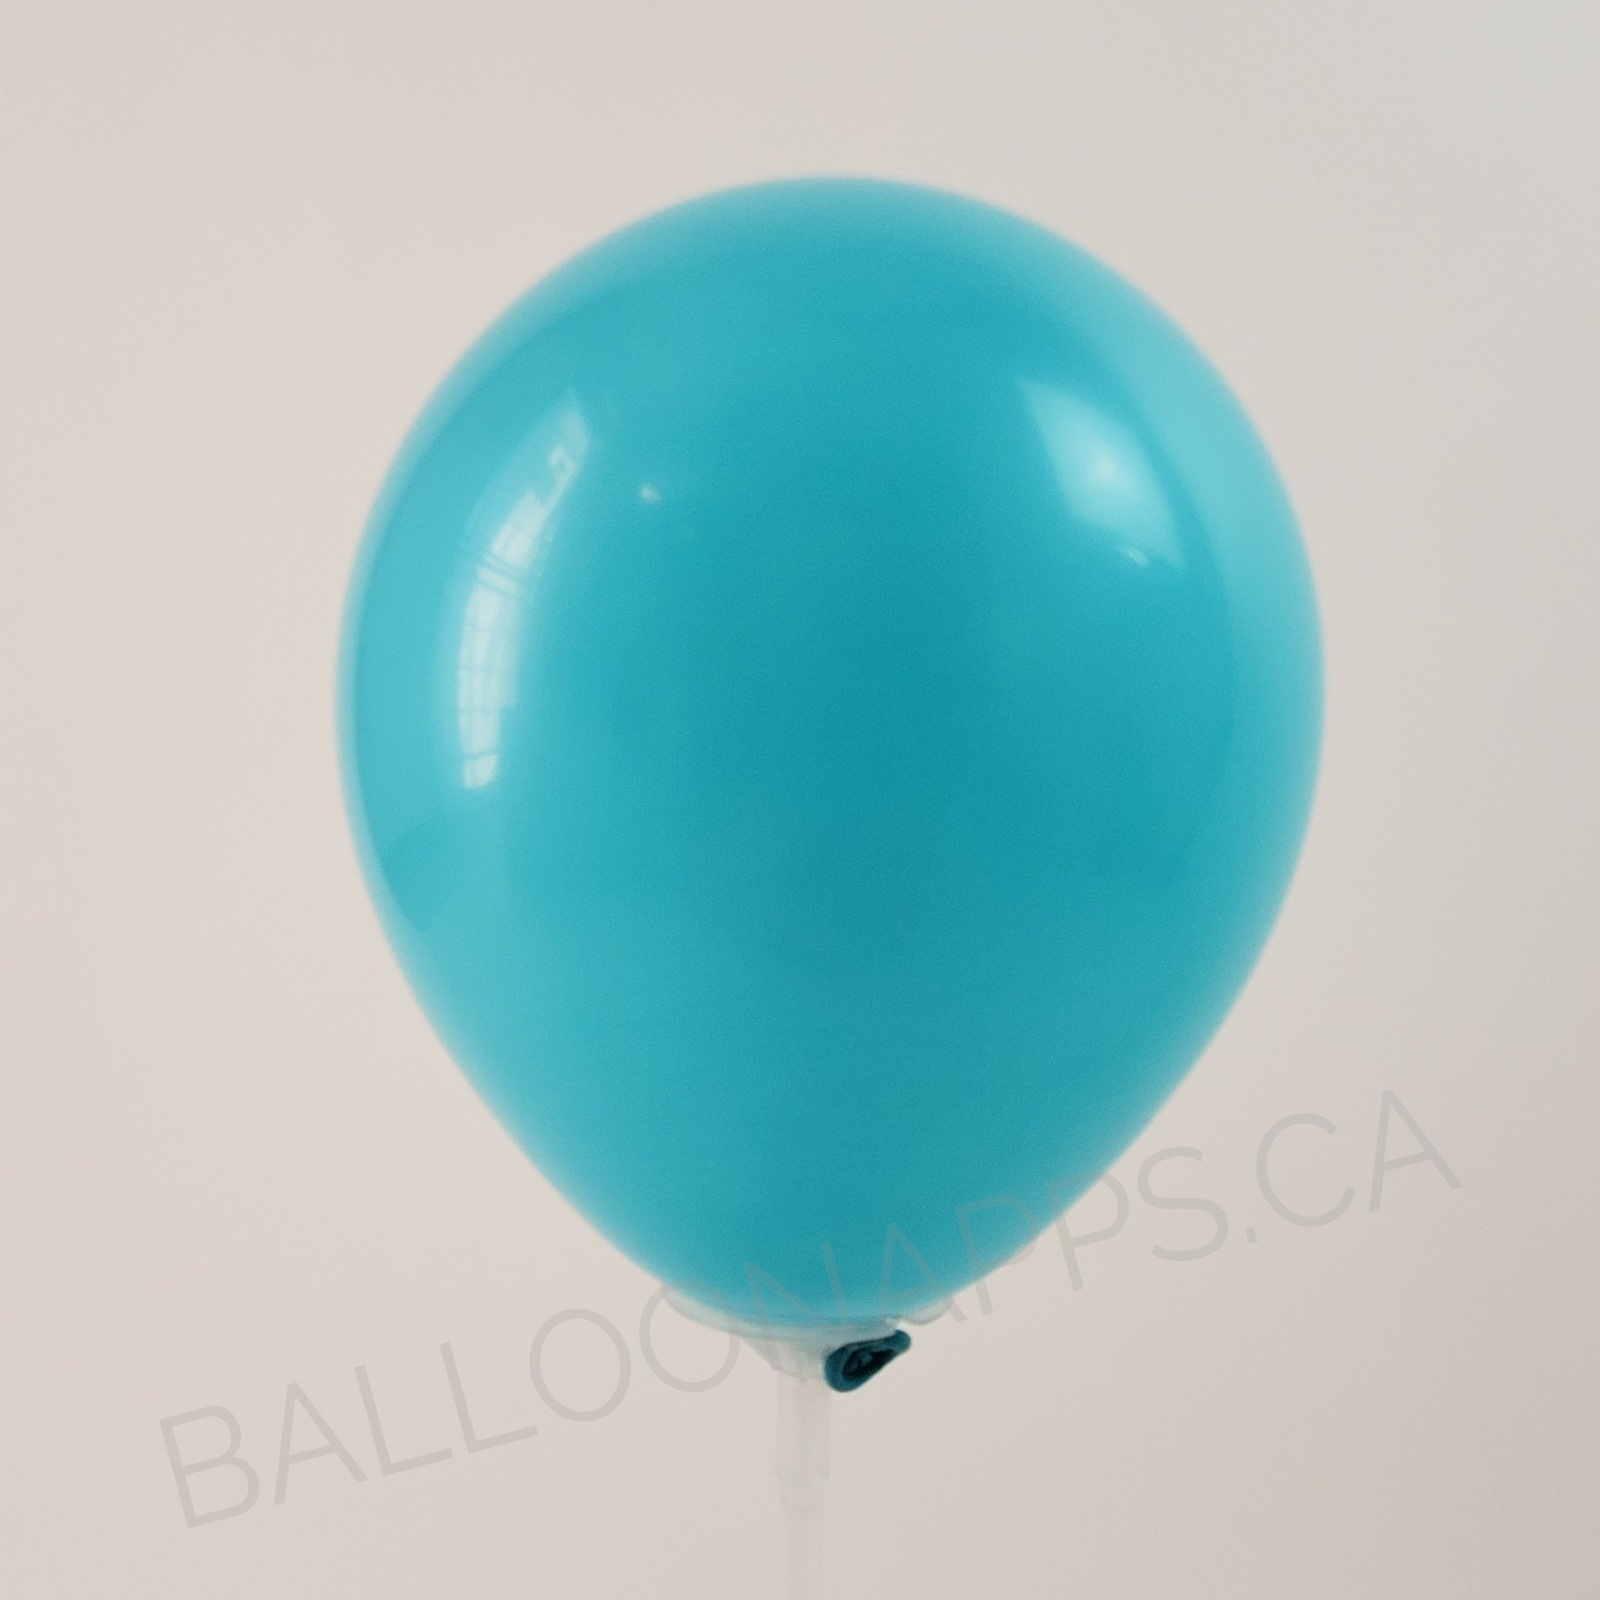 balloon texture Q (100) 260 Fashion Caribbean Blue balloons